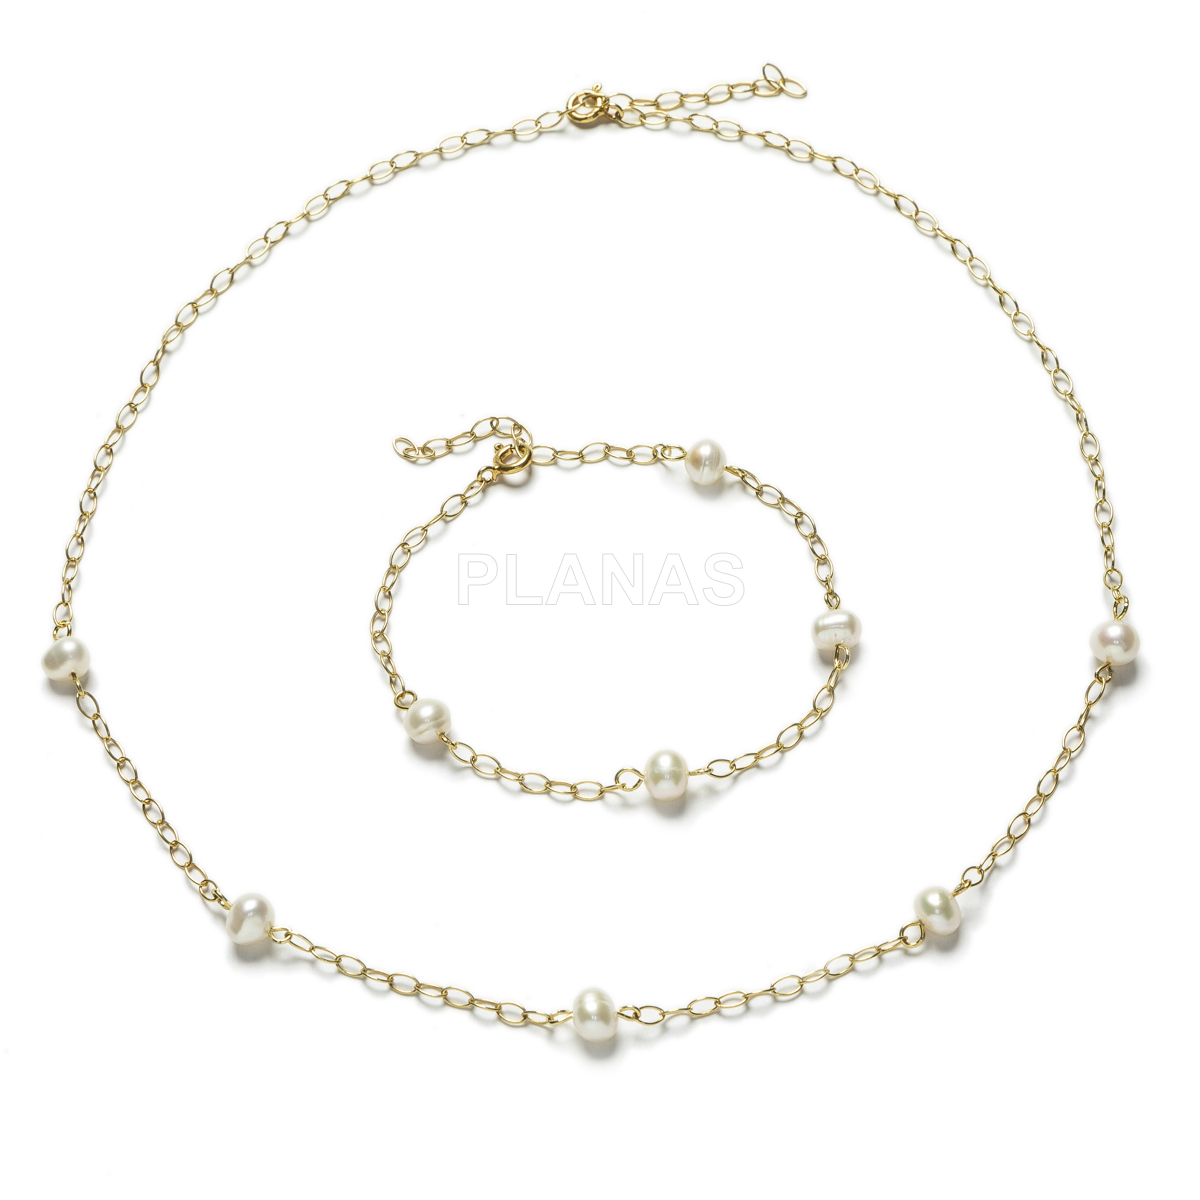 Conjunto de Collar y pulsera ajustables en Plata de ley y Baño Oro con Perlas Cultivadas.  